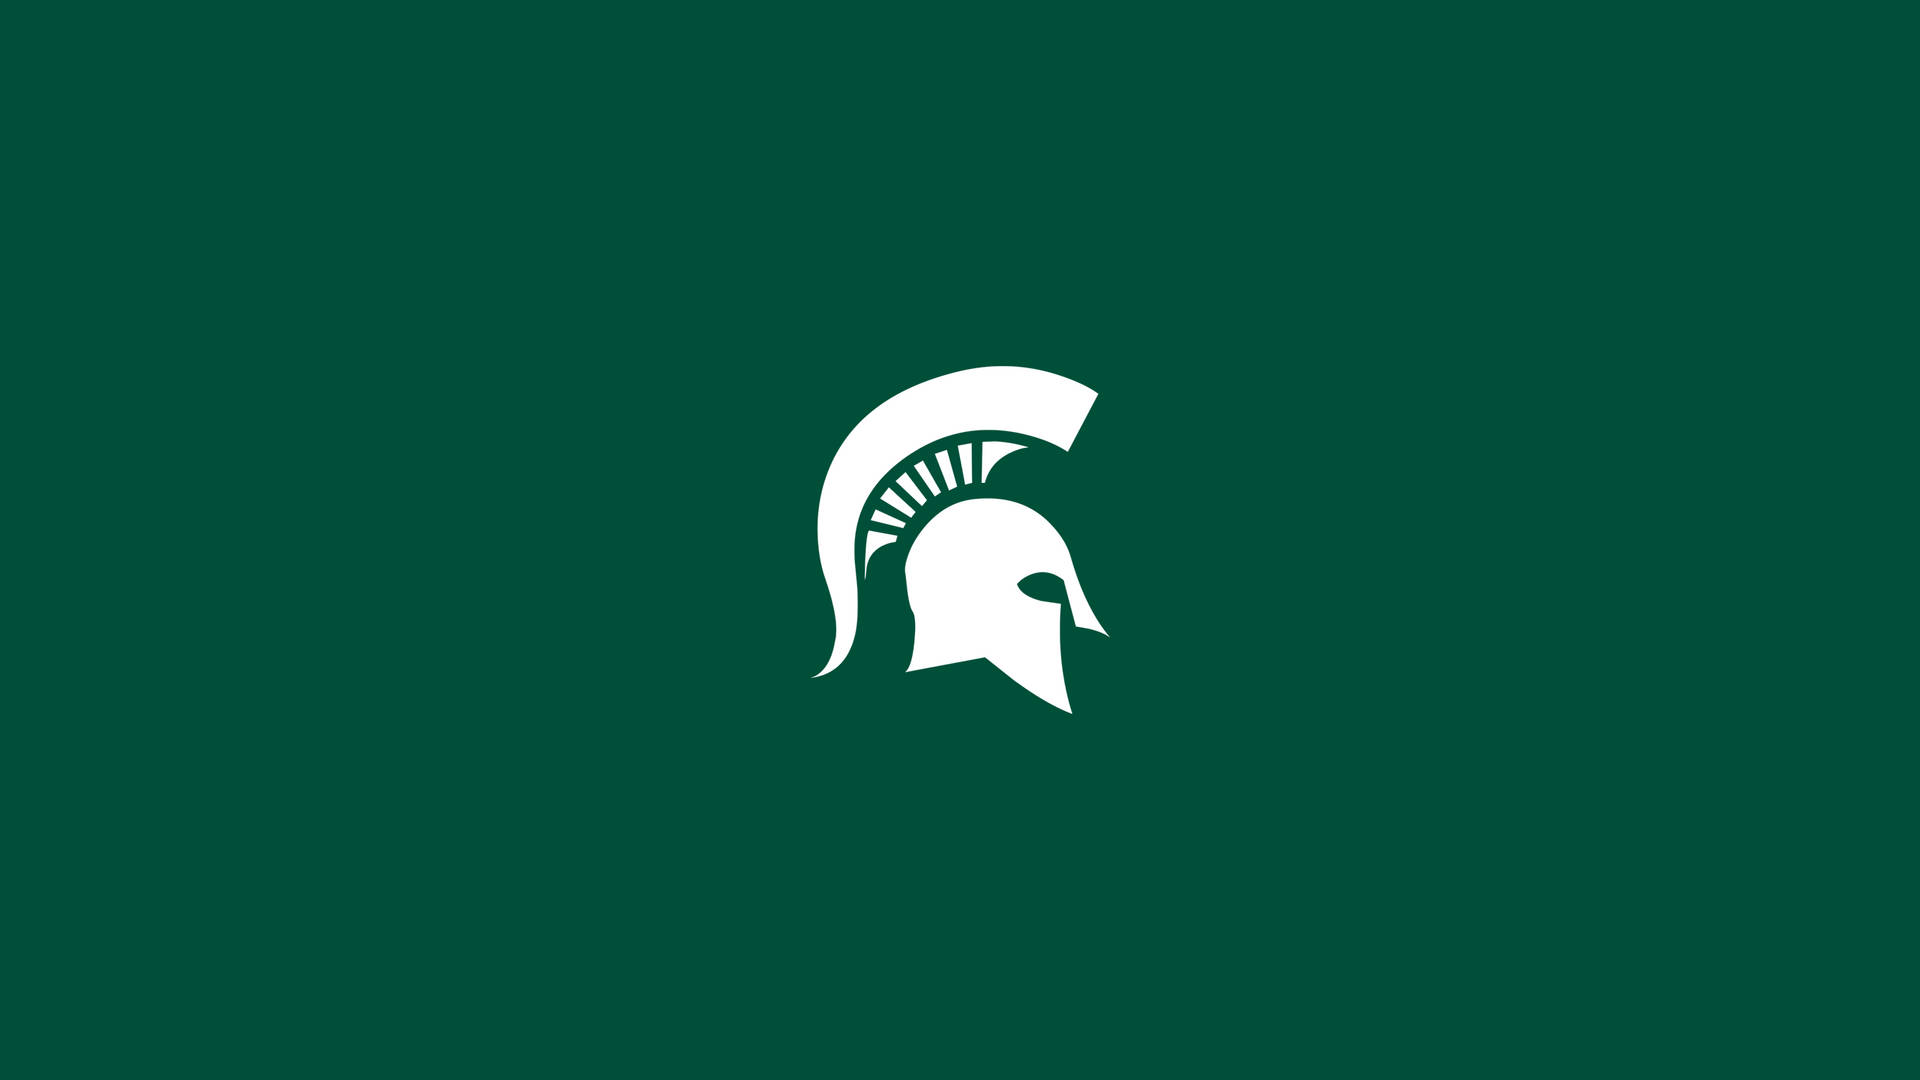 Weißesmichigan State University-logo Auf Grünem Hintergrund Wallpaper